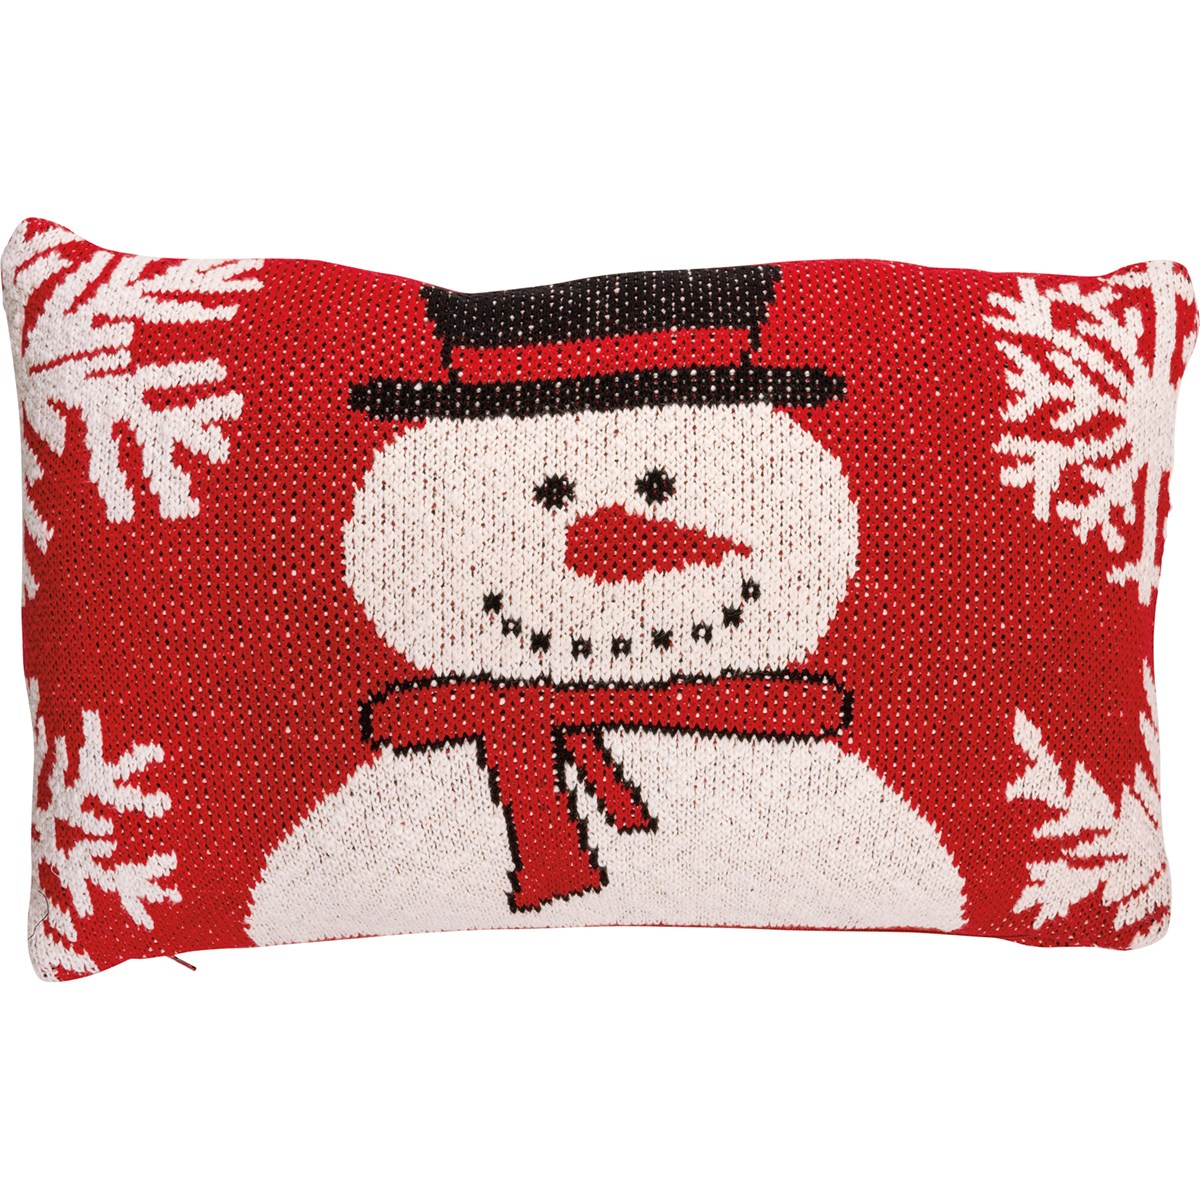 Frosty The Snowman Pillow - Cotton, Zipper